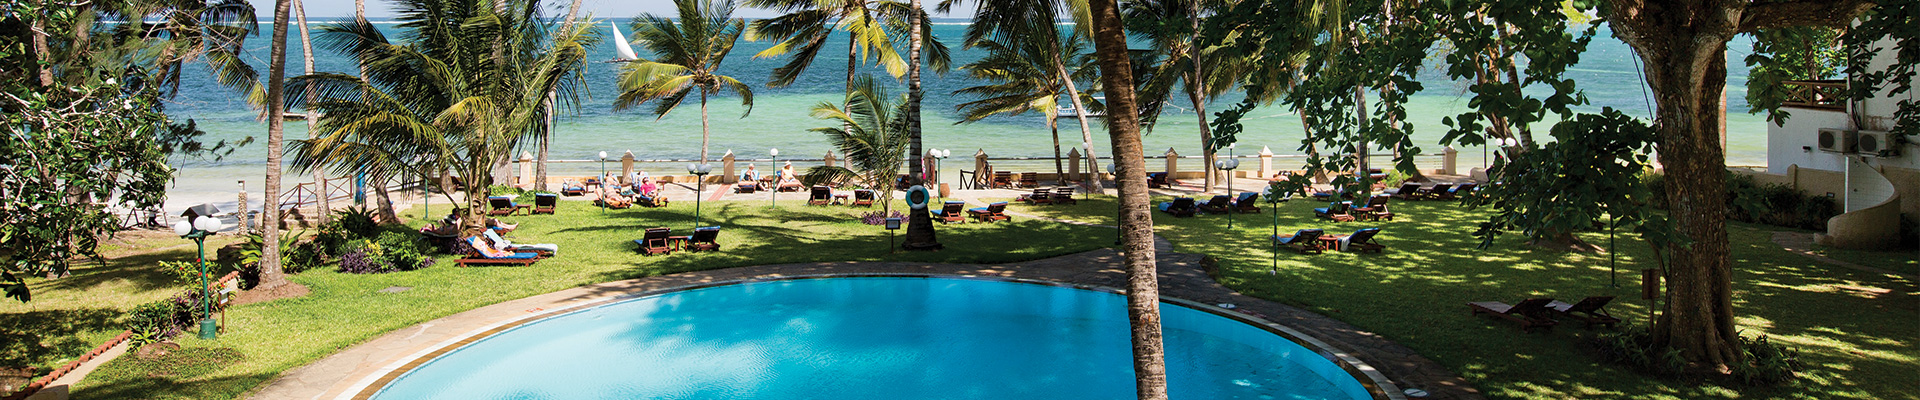 4* Neptune Beach Resort - Mombasa, North Coast  Package (6 Night)